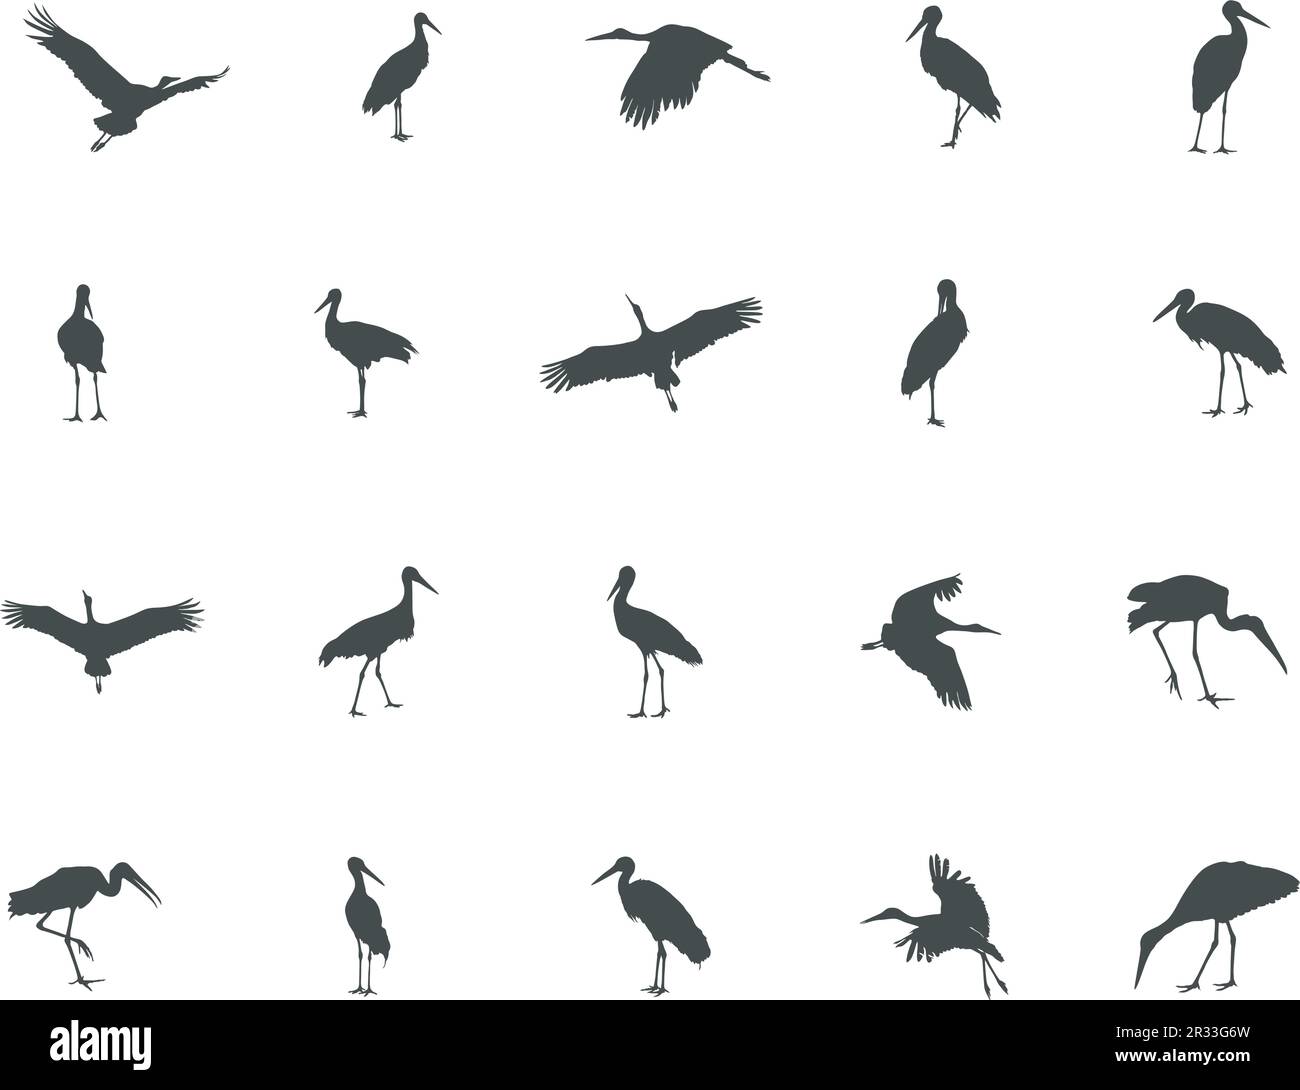 Stork silhouette, Stork vector silhouette, Flying stork silhouette, Stork silhouette clip art Stock Vector